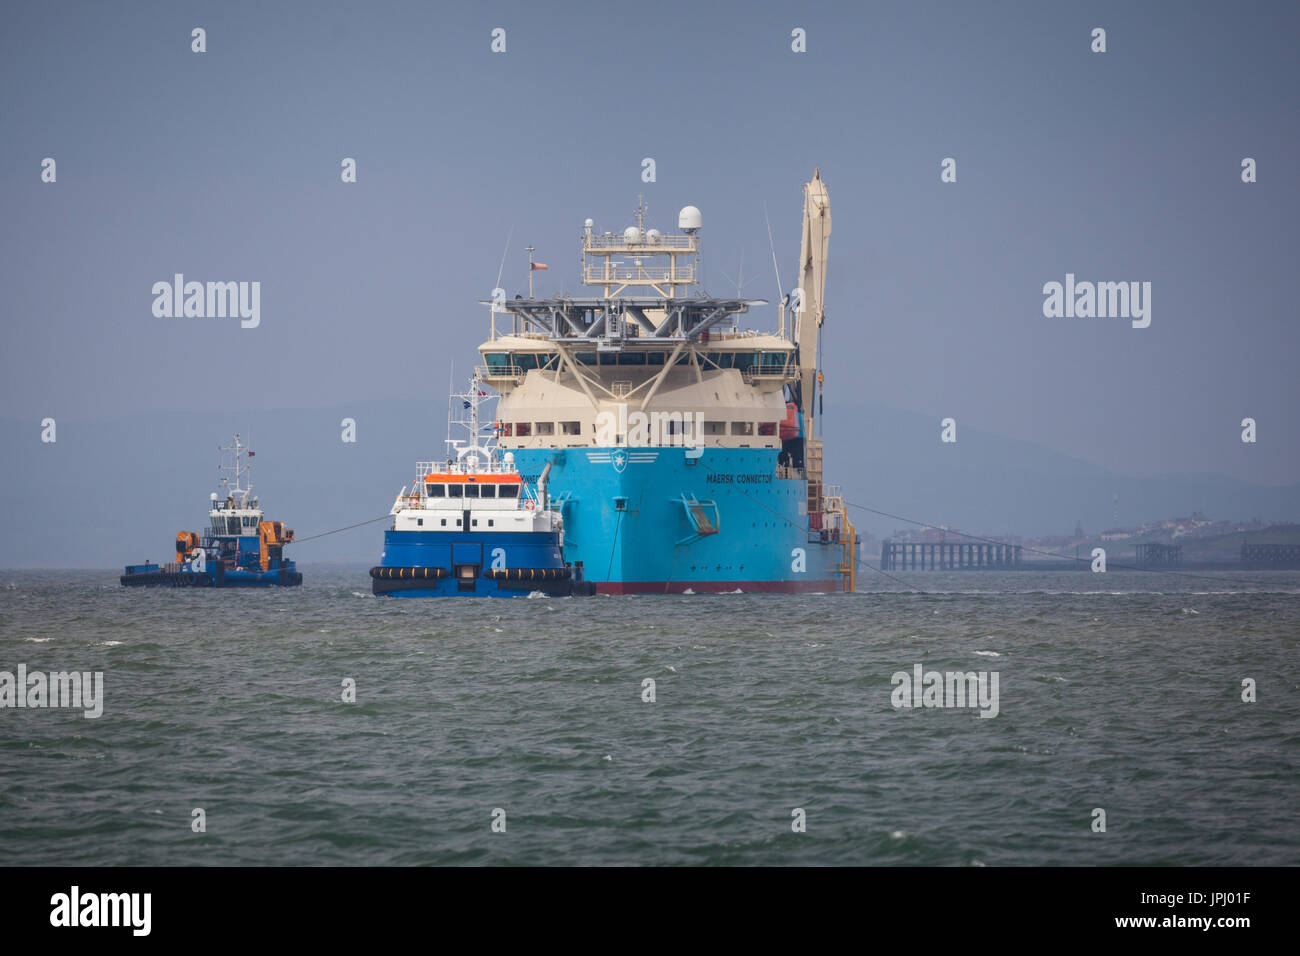 Il cavo laici, nave Maersk connettore, installando il Walney 3 cavo di esportazione. La fattoria eolica diventerà parte del del parco eolico offshore più grande del mondo e si trova al largo della costa della Cumbria, Regno Unito Foto Stock